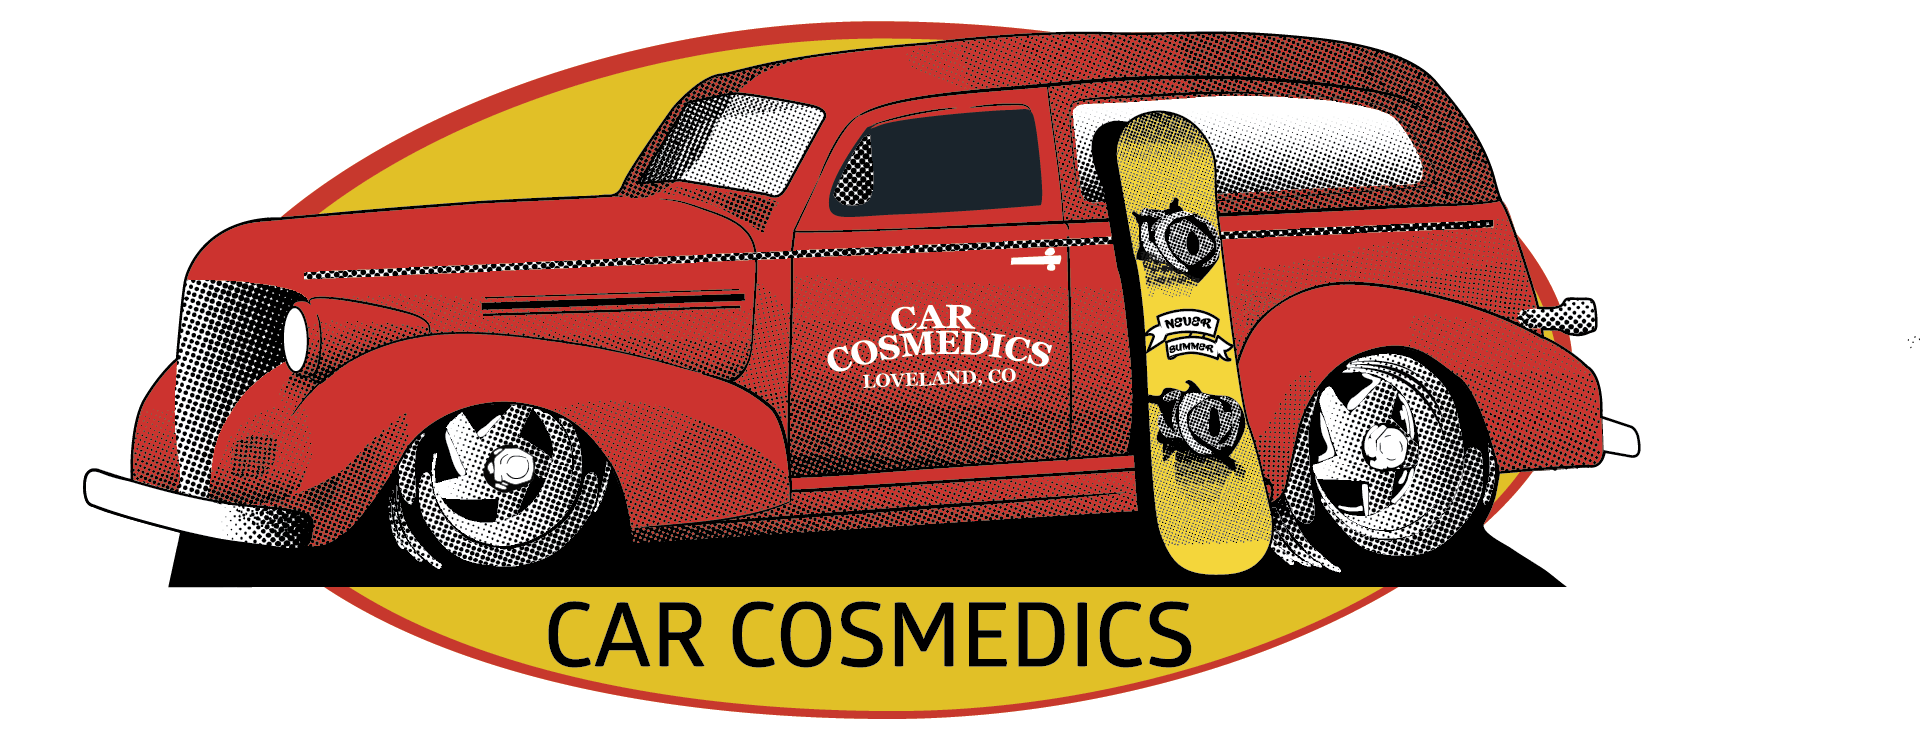 Car Cosmedics